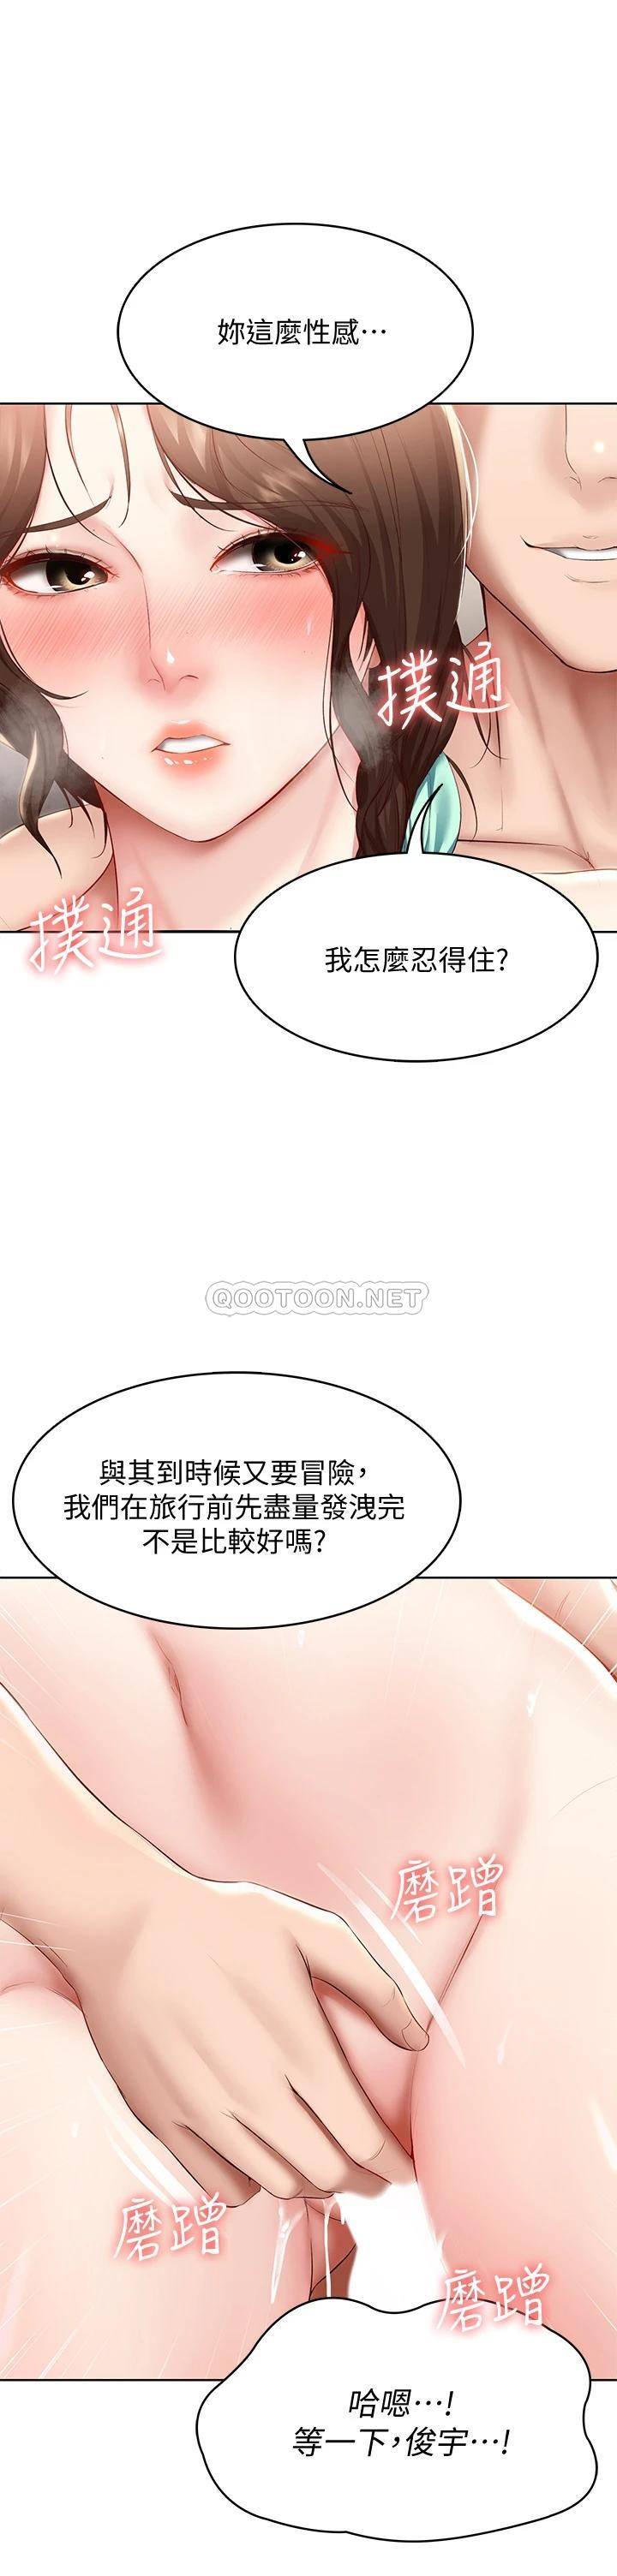 韩国污漫画 寄宿日記 第71话口爆朋友的妈妈 11